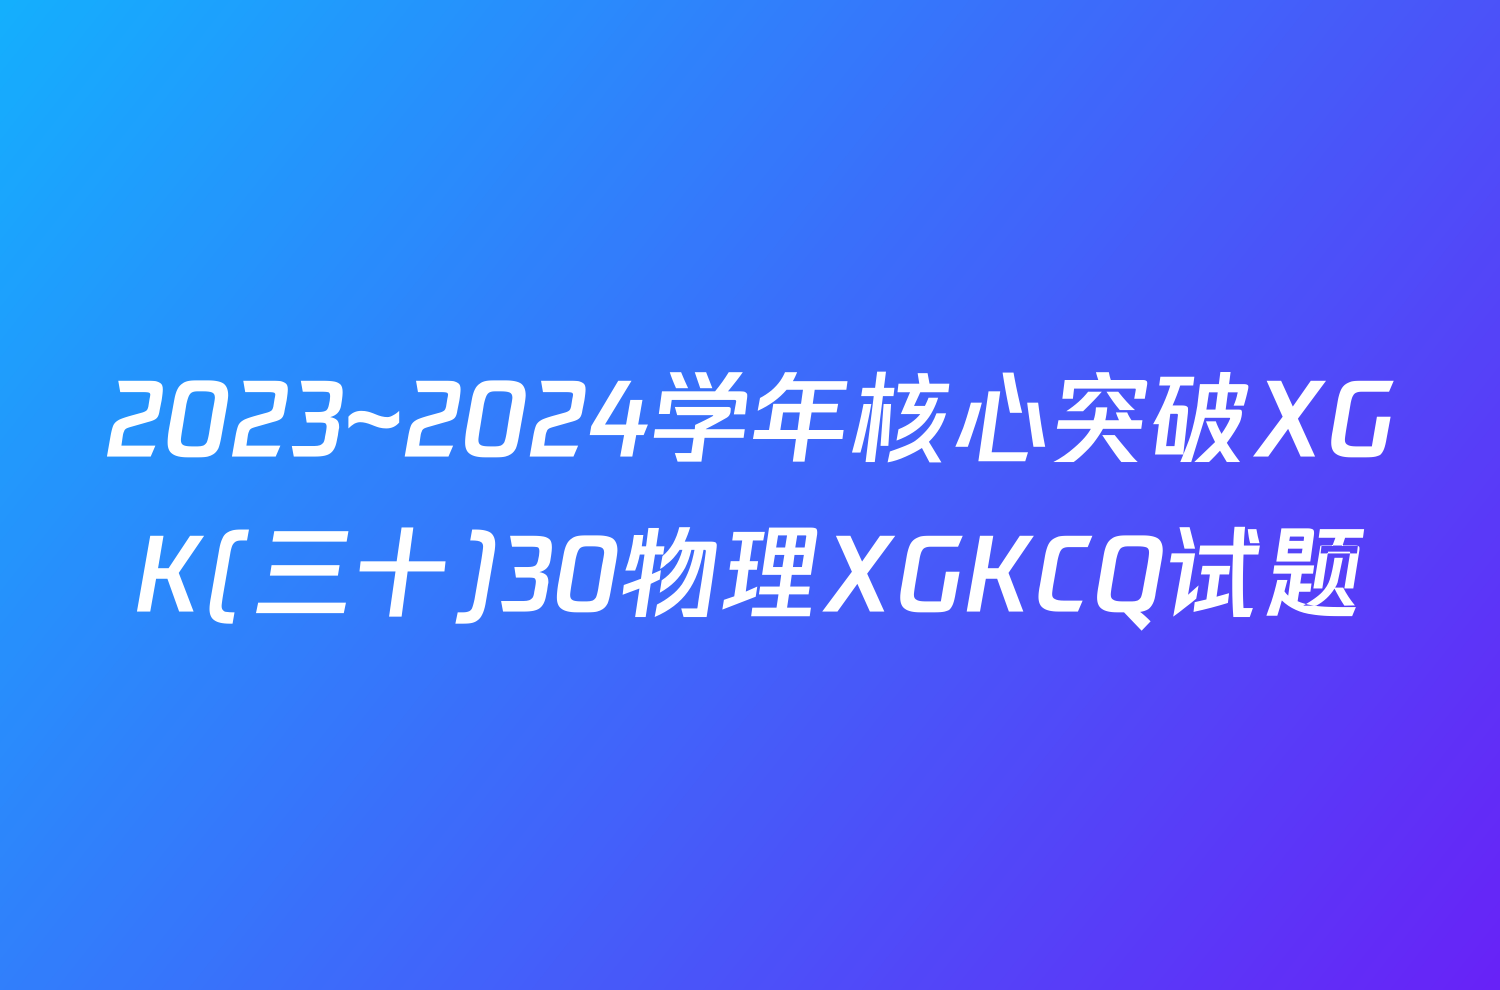 2023~2024学年核心突破XGK(三十)30物理XGKCQ试题